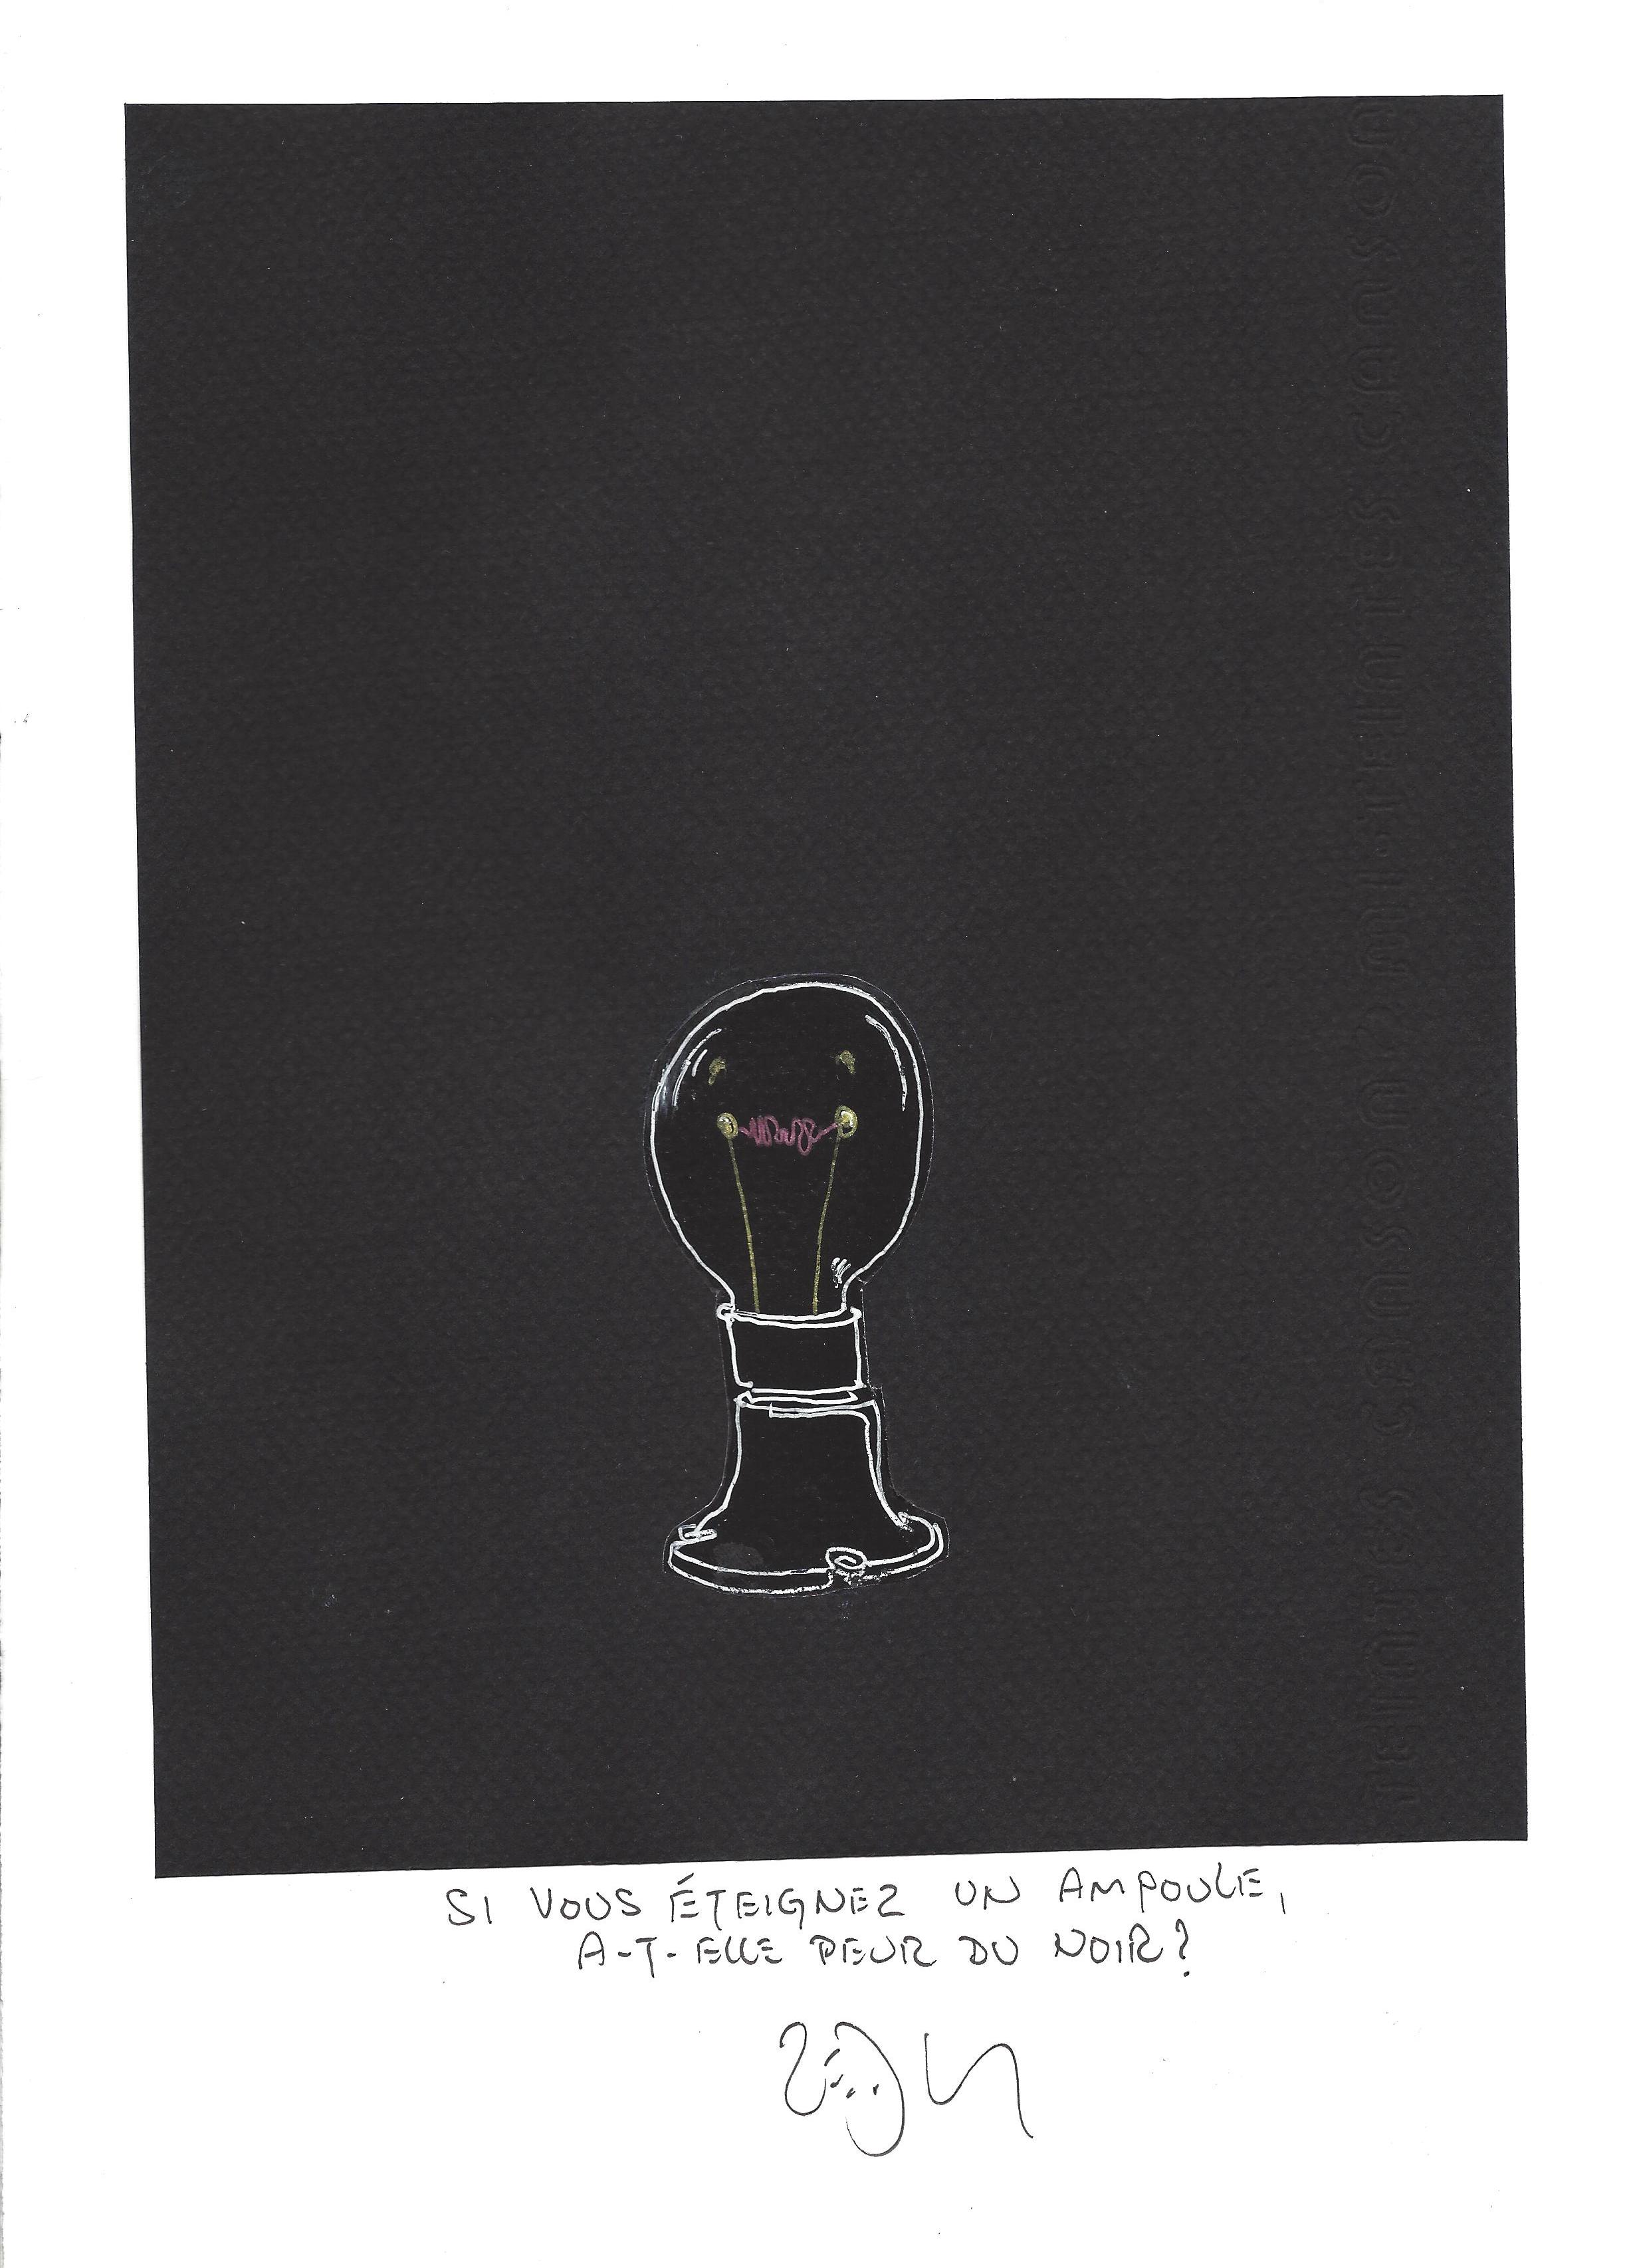 « If you turn off a lightbulb, does it fear the dark ? – Si vous éteignez un ampoule, a-t-elle peur du noir ? »